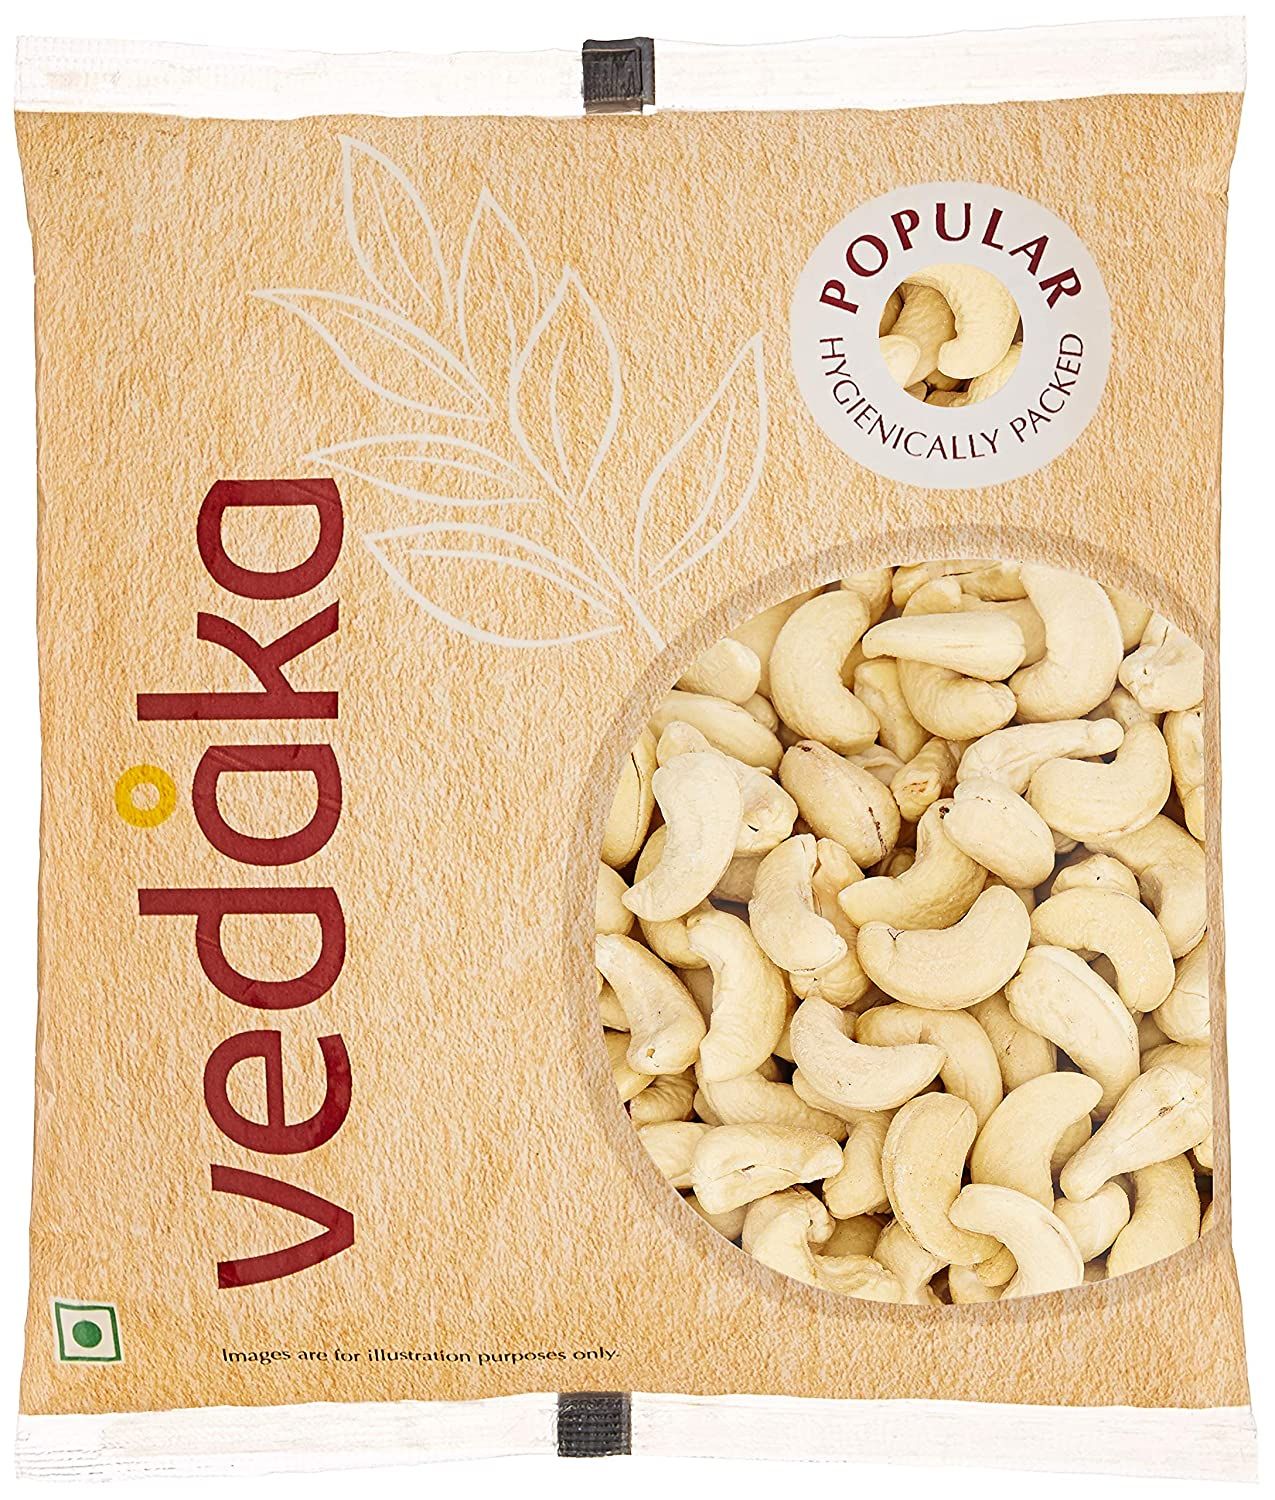 Vedaka Whole Cashew Image